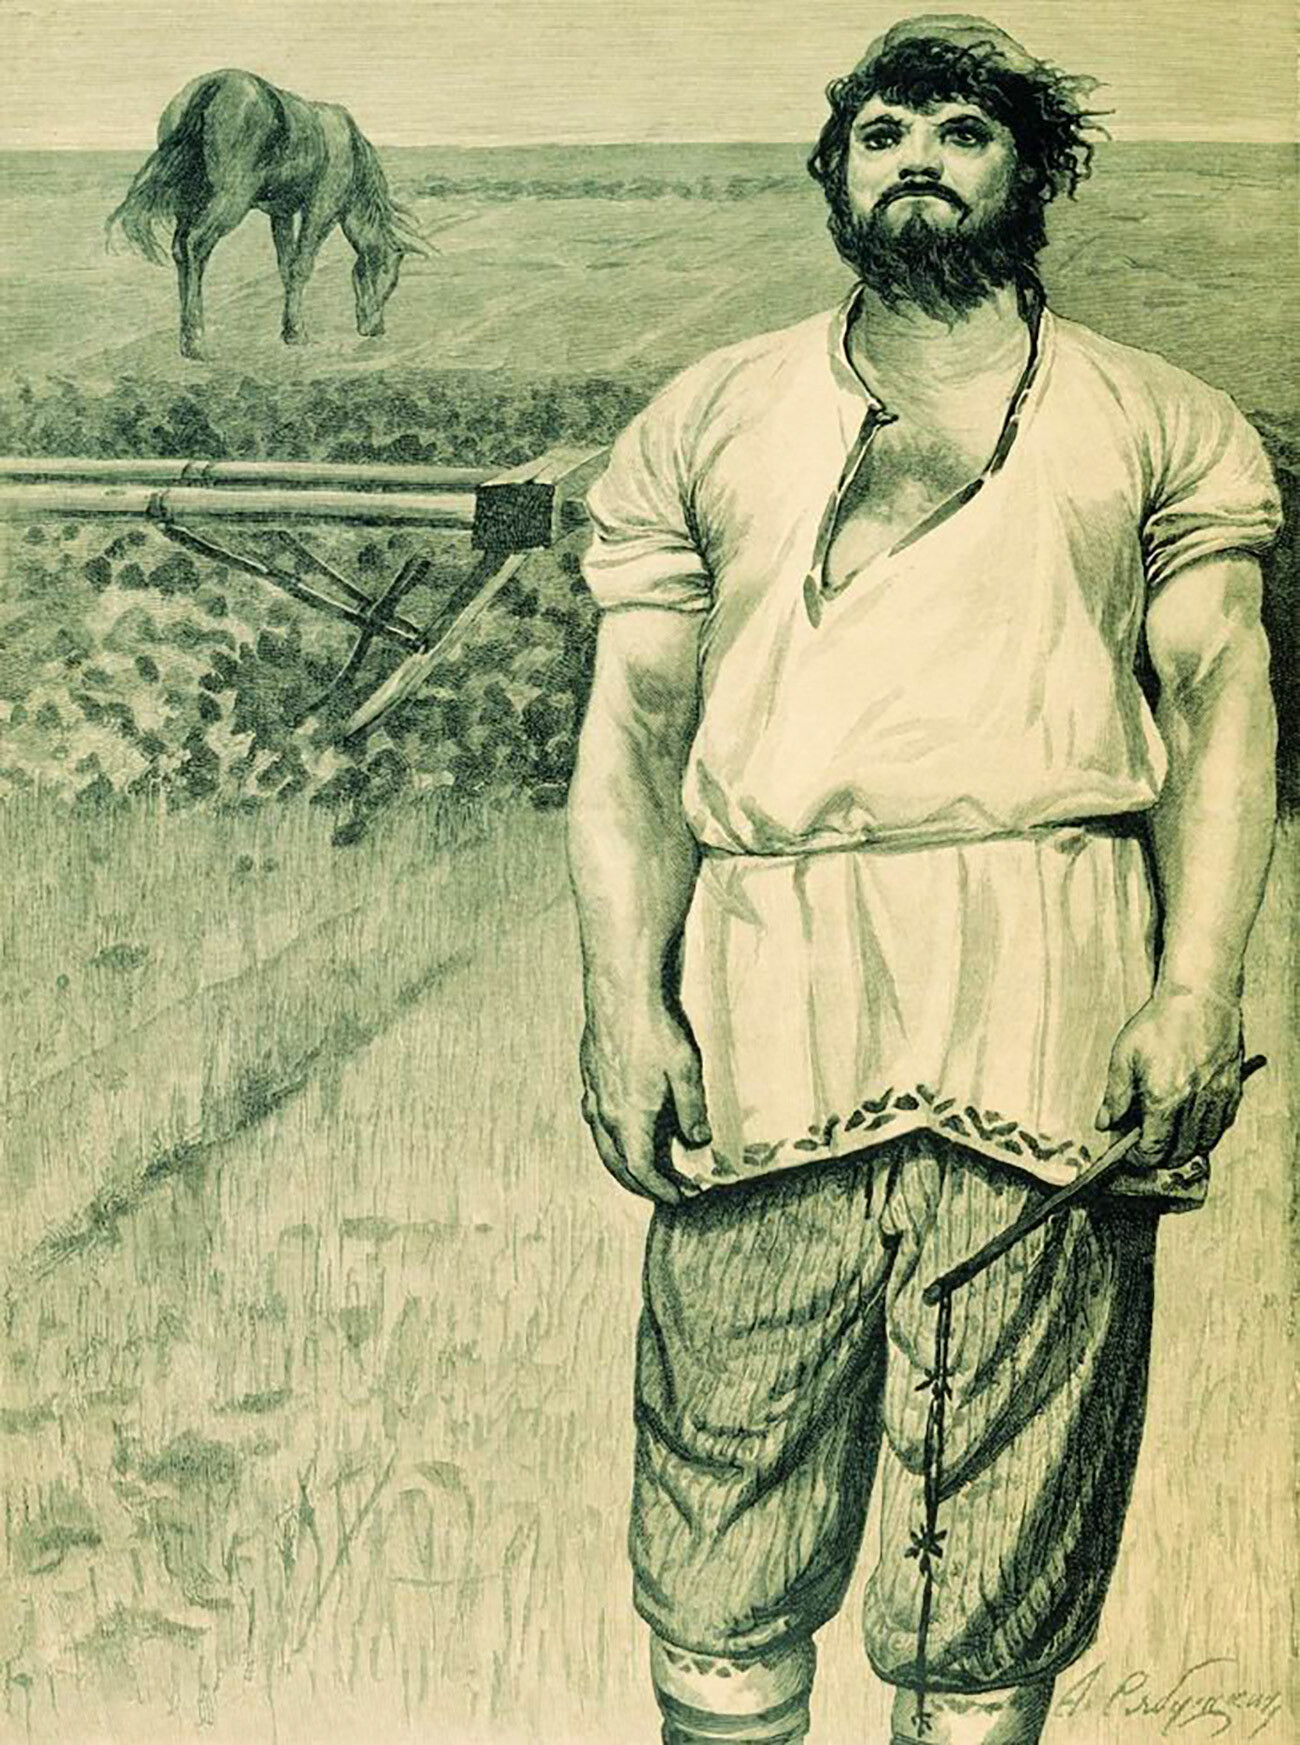 「ミクーラ・セリャニノヴィチ」、1895年、アンドレイ・リャブシキン作